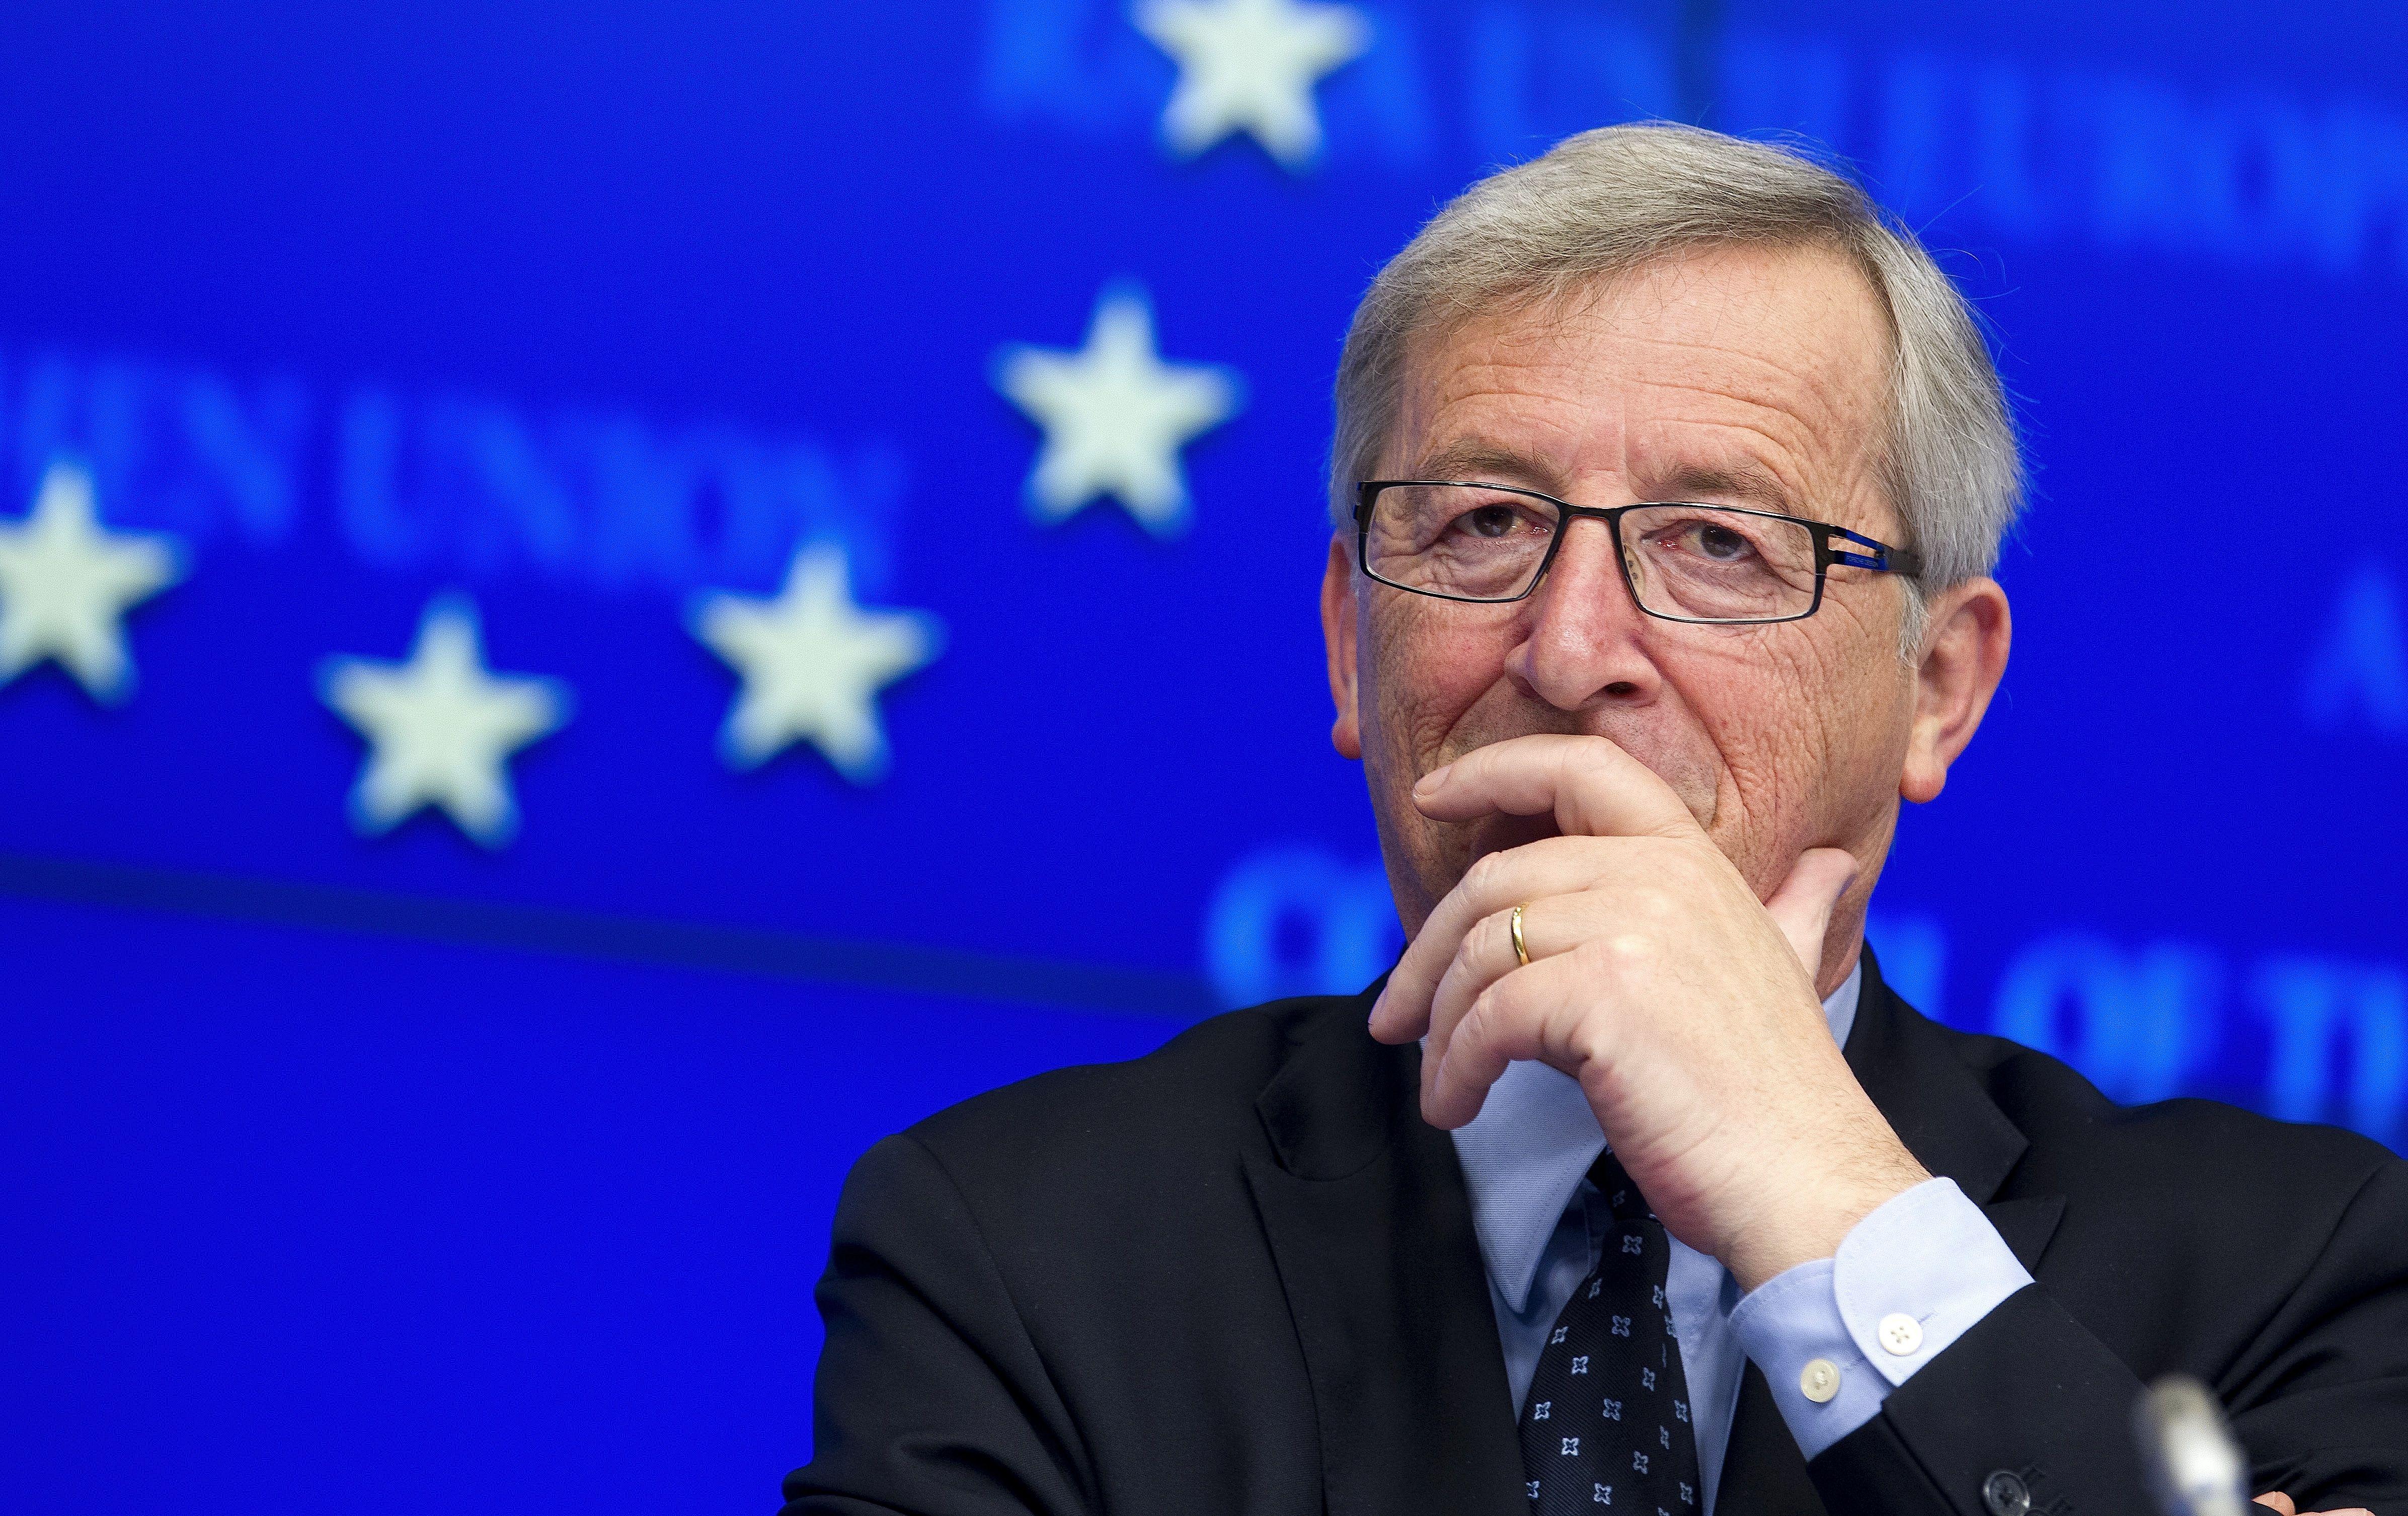 Эксперты предложили ЕС «поглотить» евразийскую интеграцию